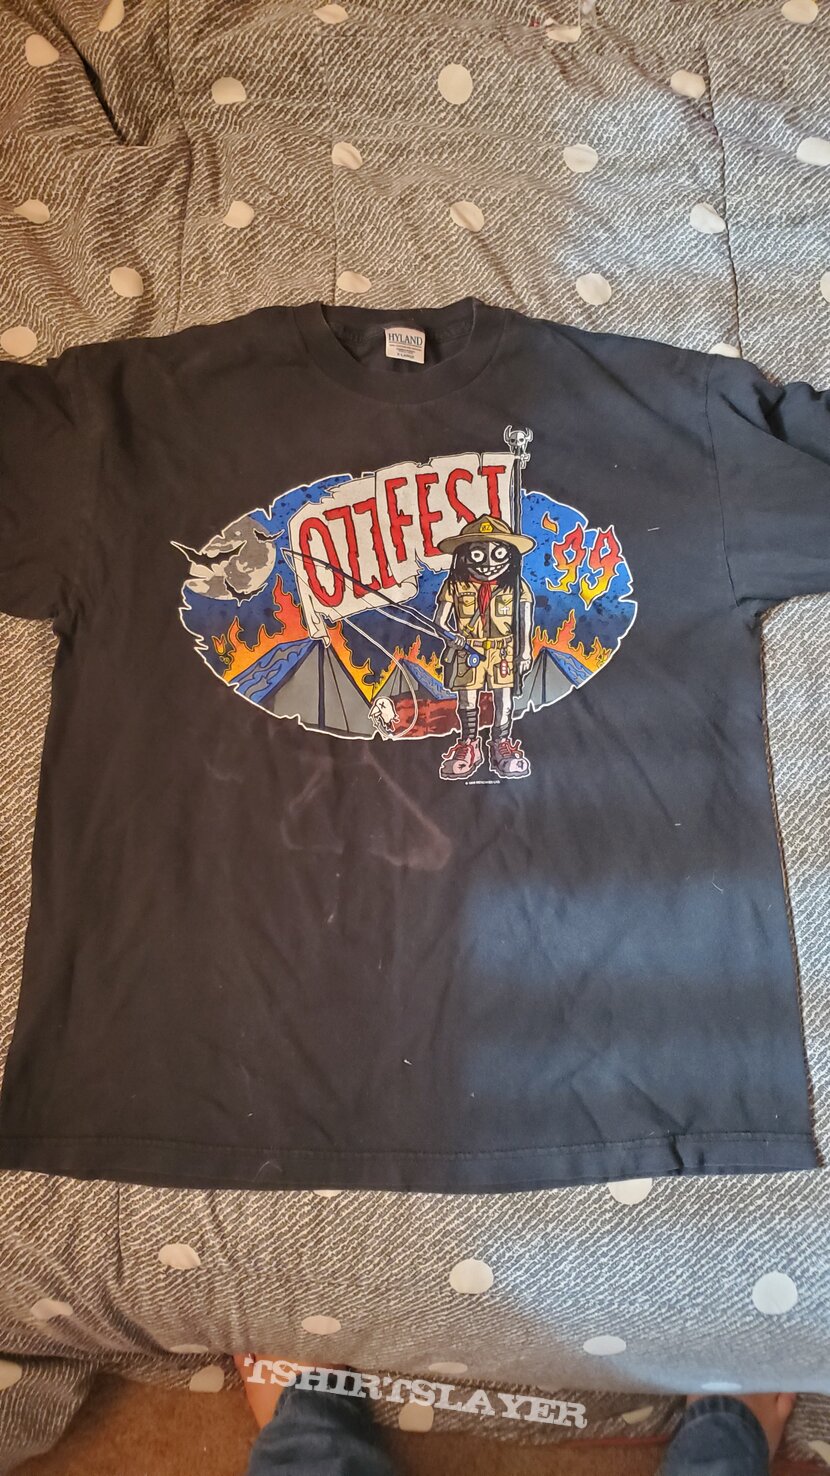 Black Sabbath OzzFest 1999 shirt